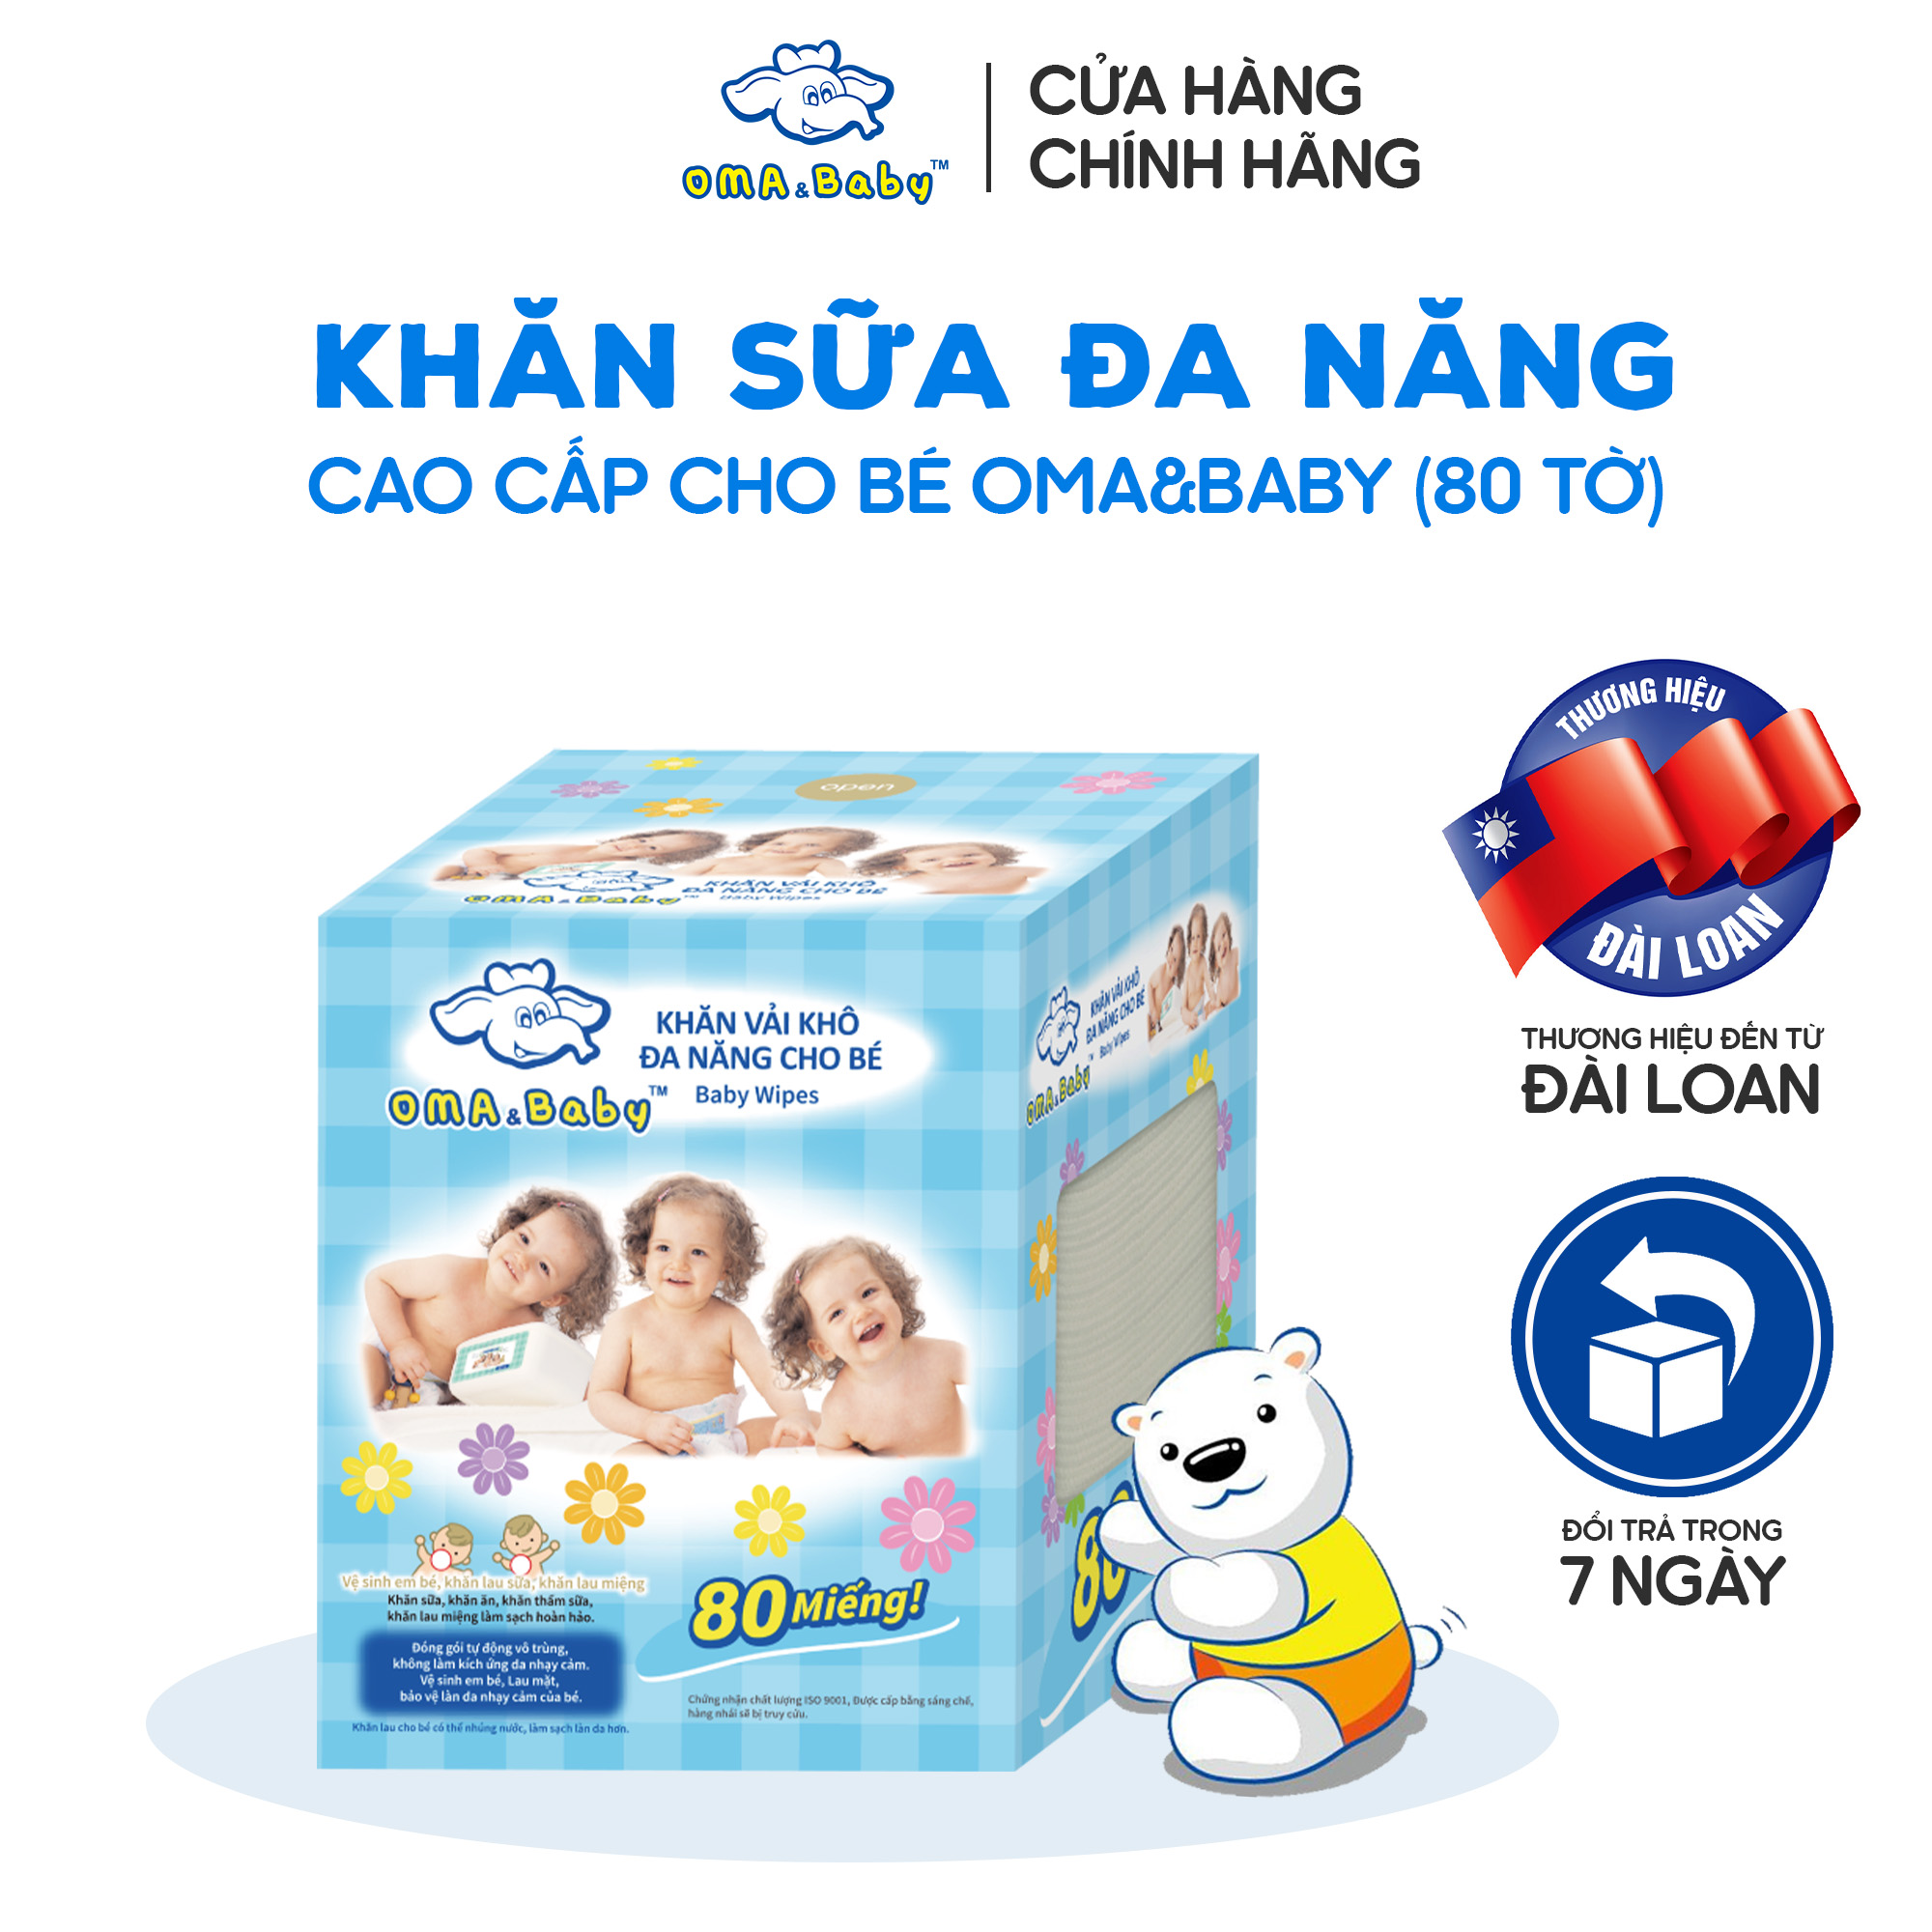 Khăn vải khô đa năng cho bé Oma Baby ( 1 Hộp/ 80 Miếng) - Oma & Baby Premium Baby Dry Multi-Functional Cloths ( 80 cloths per box)